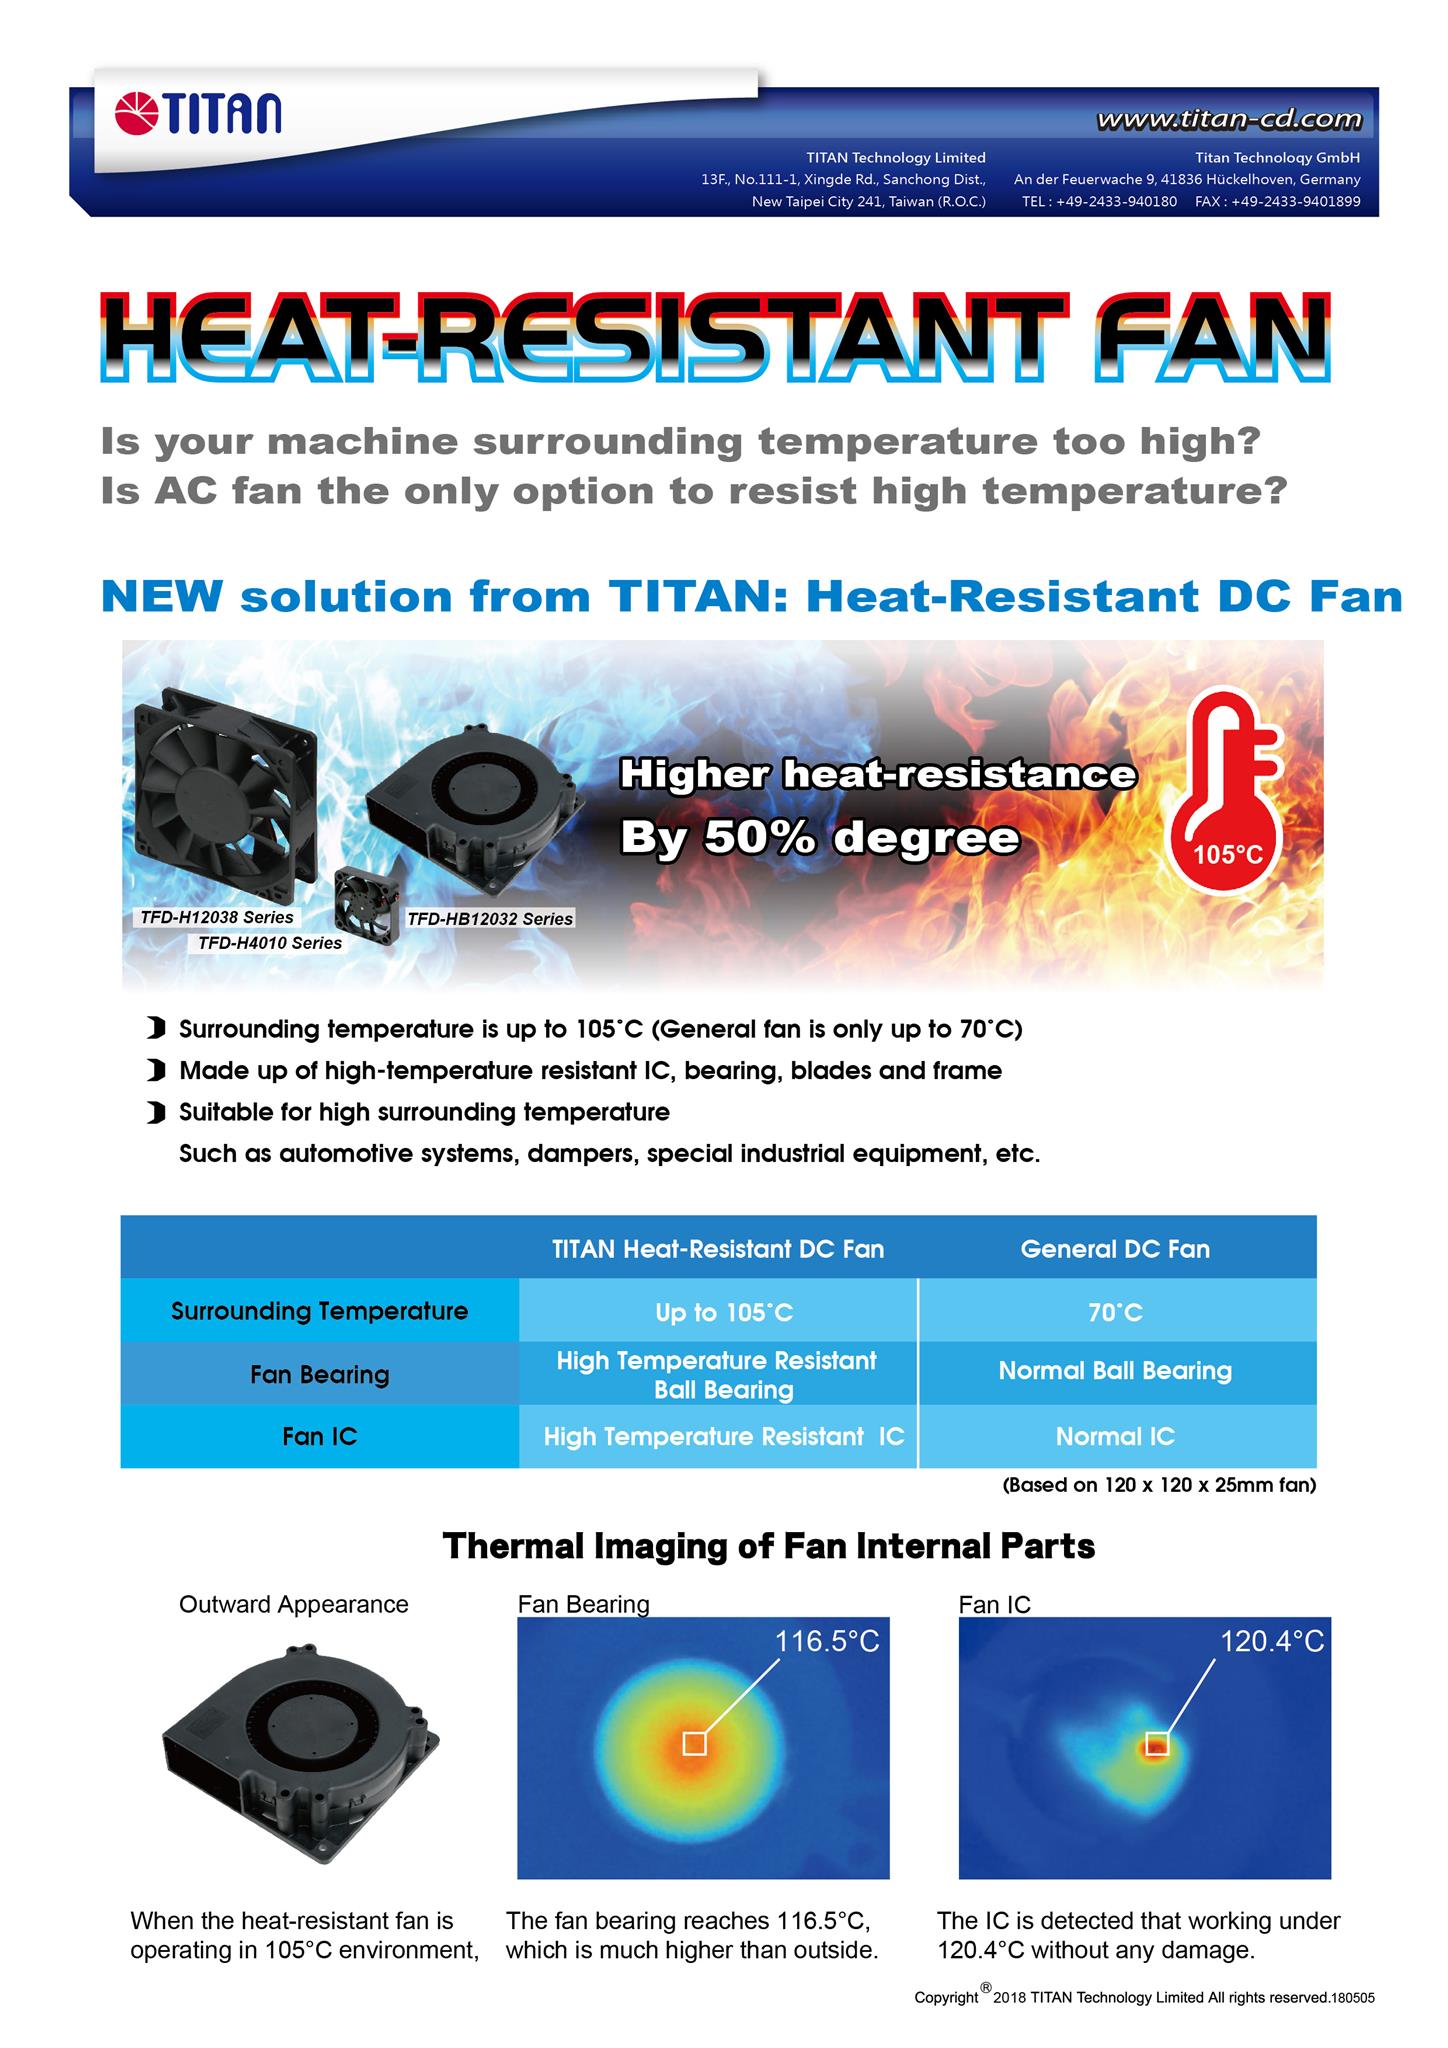 TITAN düşük profil CPU soğutucu sadece 23-30mm yüksekliğindedir. Düşük profil kasa veya diğer HTPC kasa için uygundur.